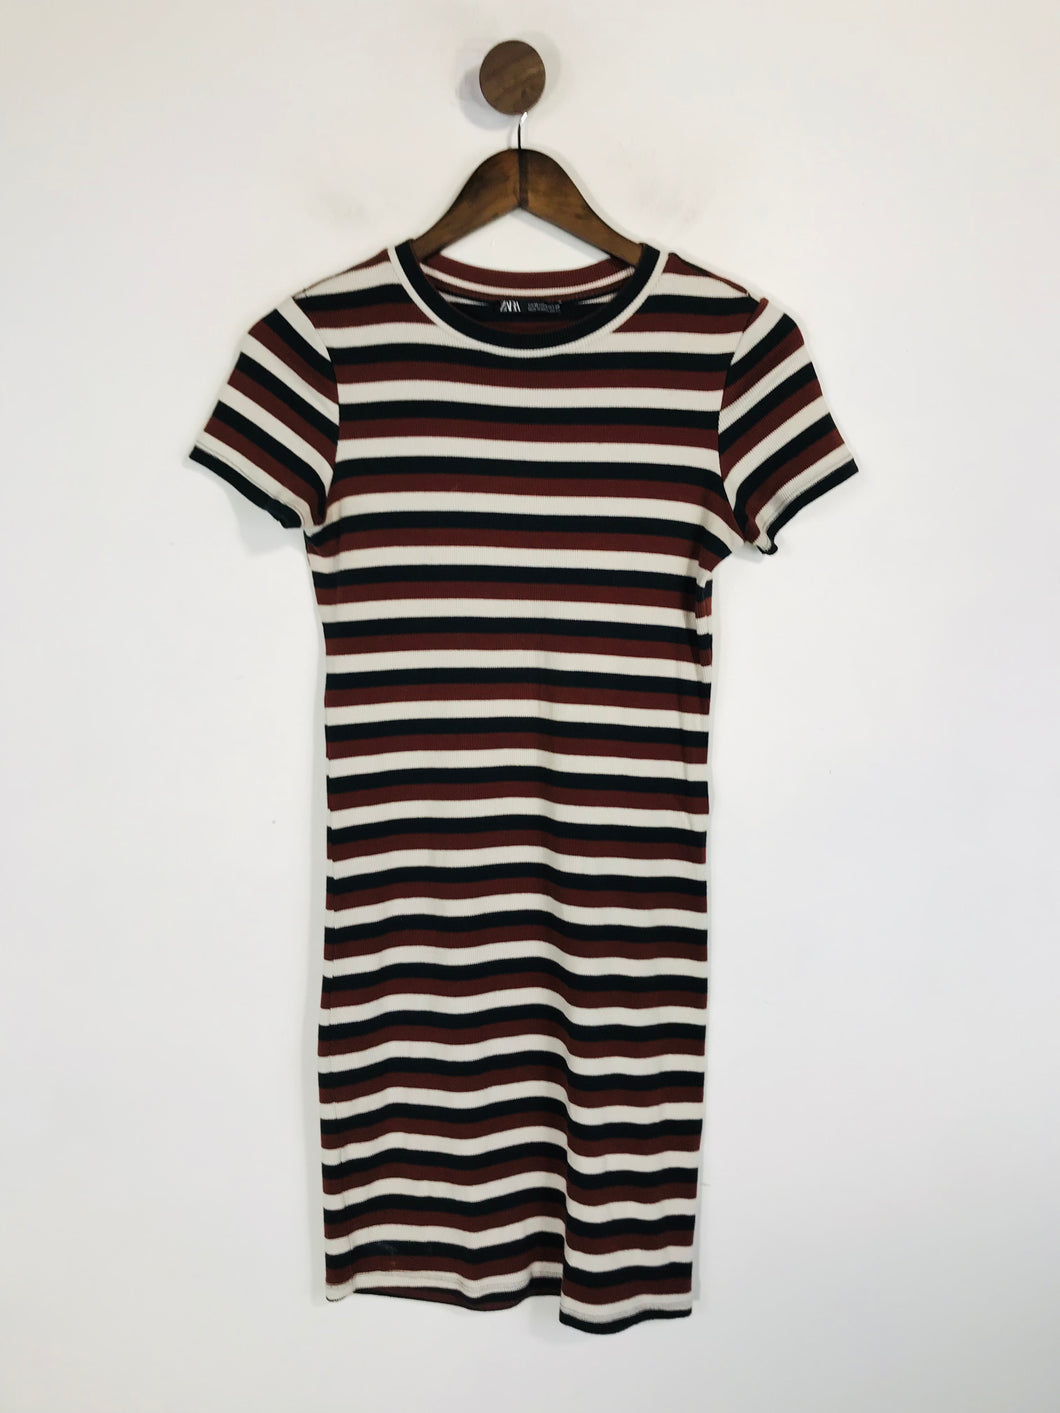 Zara Women's Striped Jersey Bodycon Dress | M UK10-12 | Multicoloured